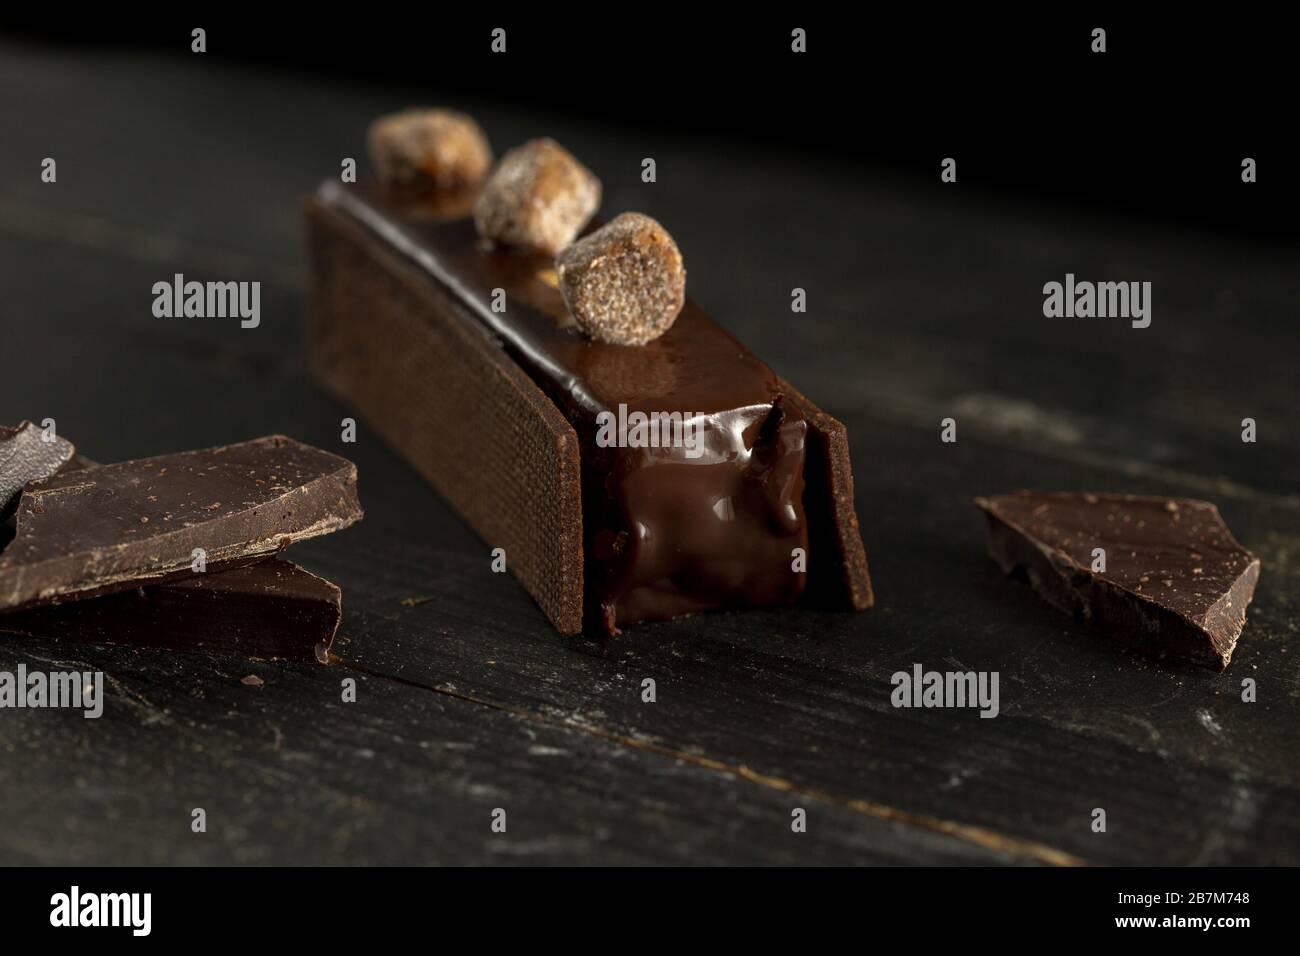 Torta di cioccolato tra due buiscuits con decorazione streusel Foto Stock